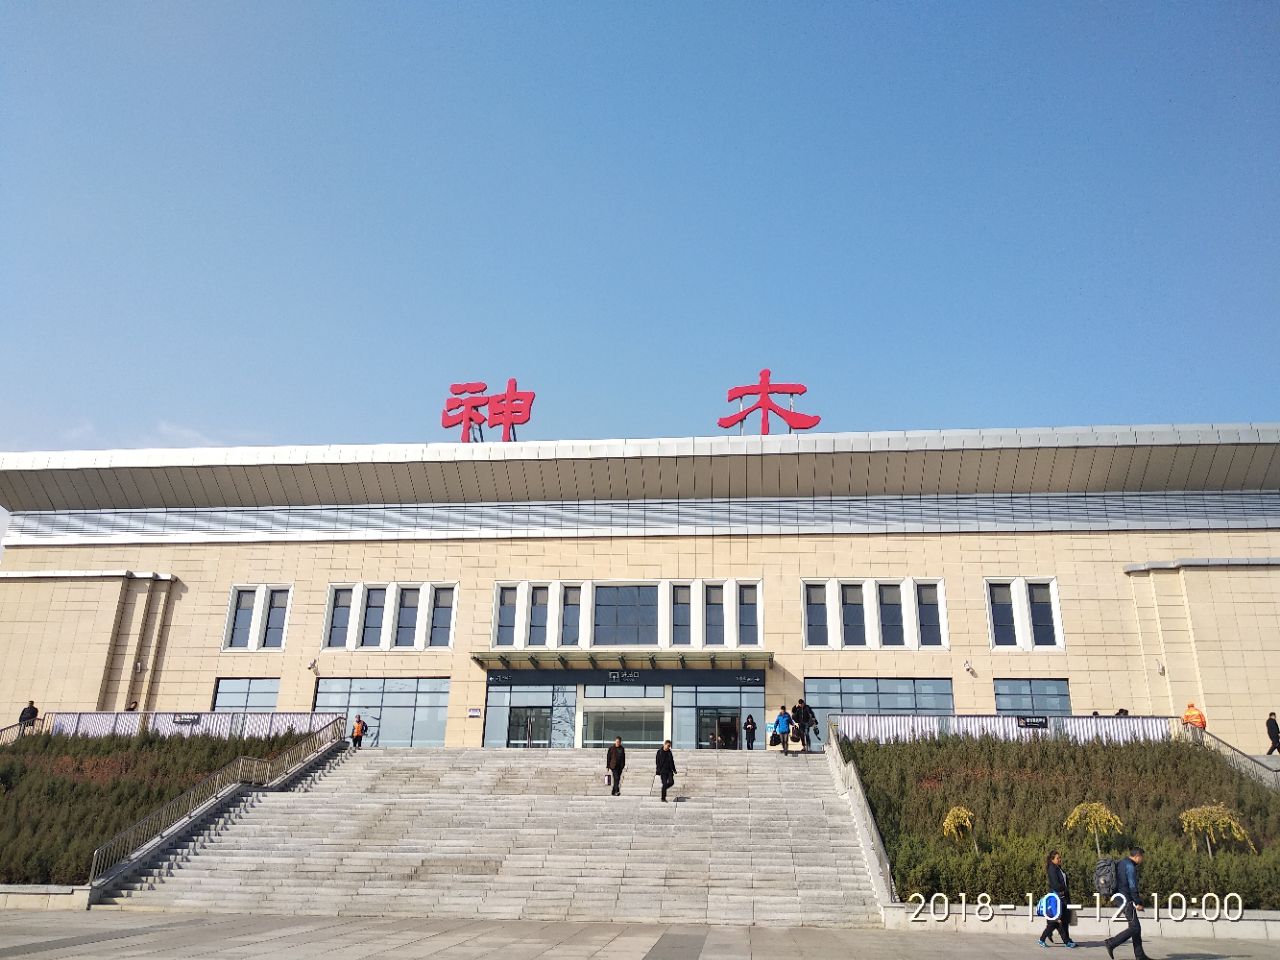 神木火车站,位于陕西省北部的神木市,属于神延铁路(神大铁路,神木